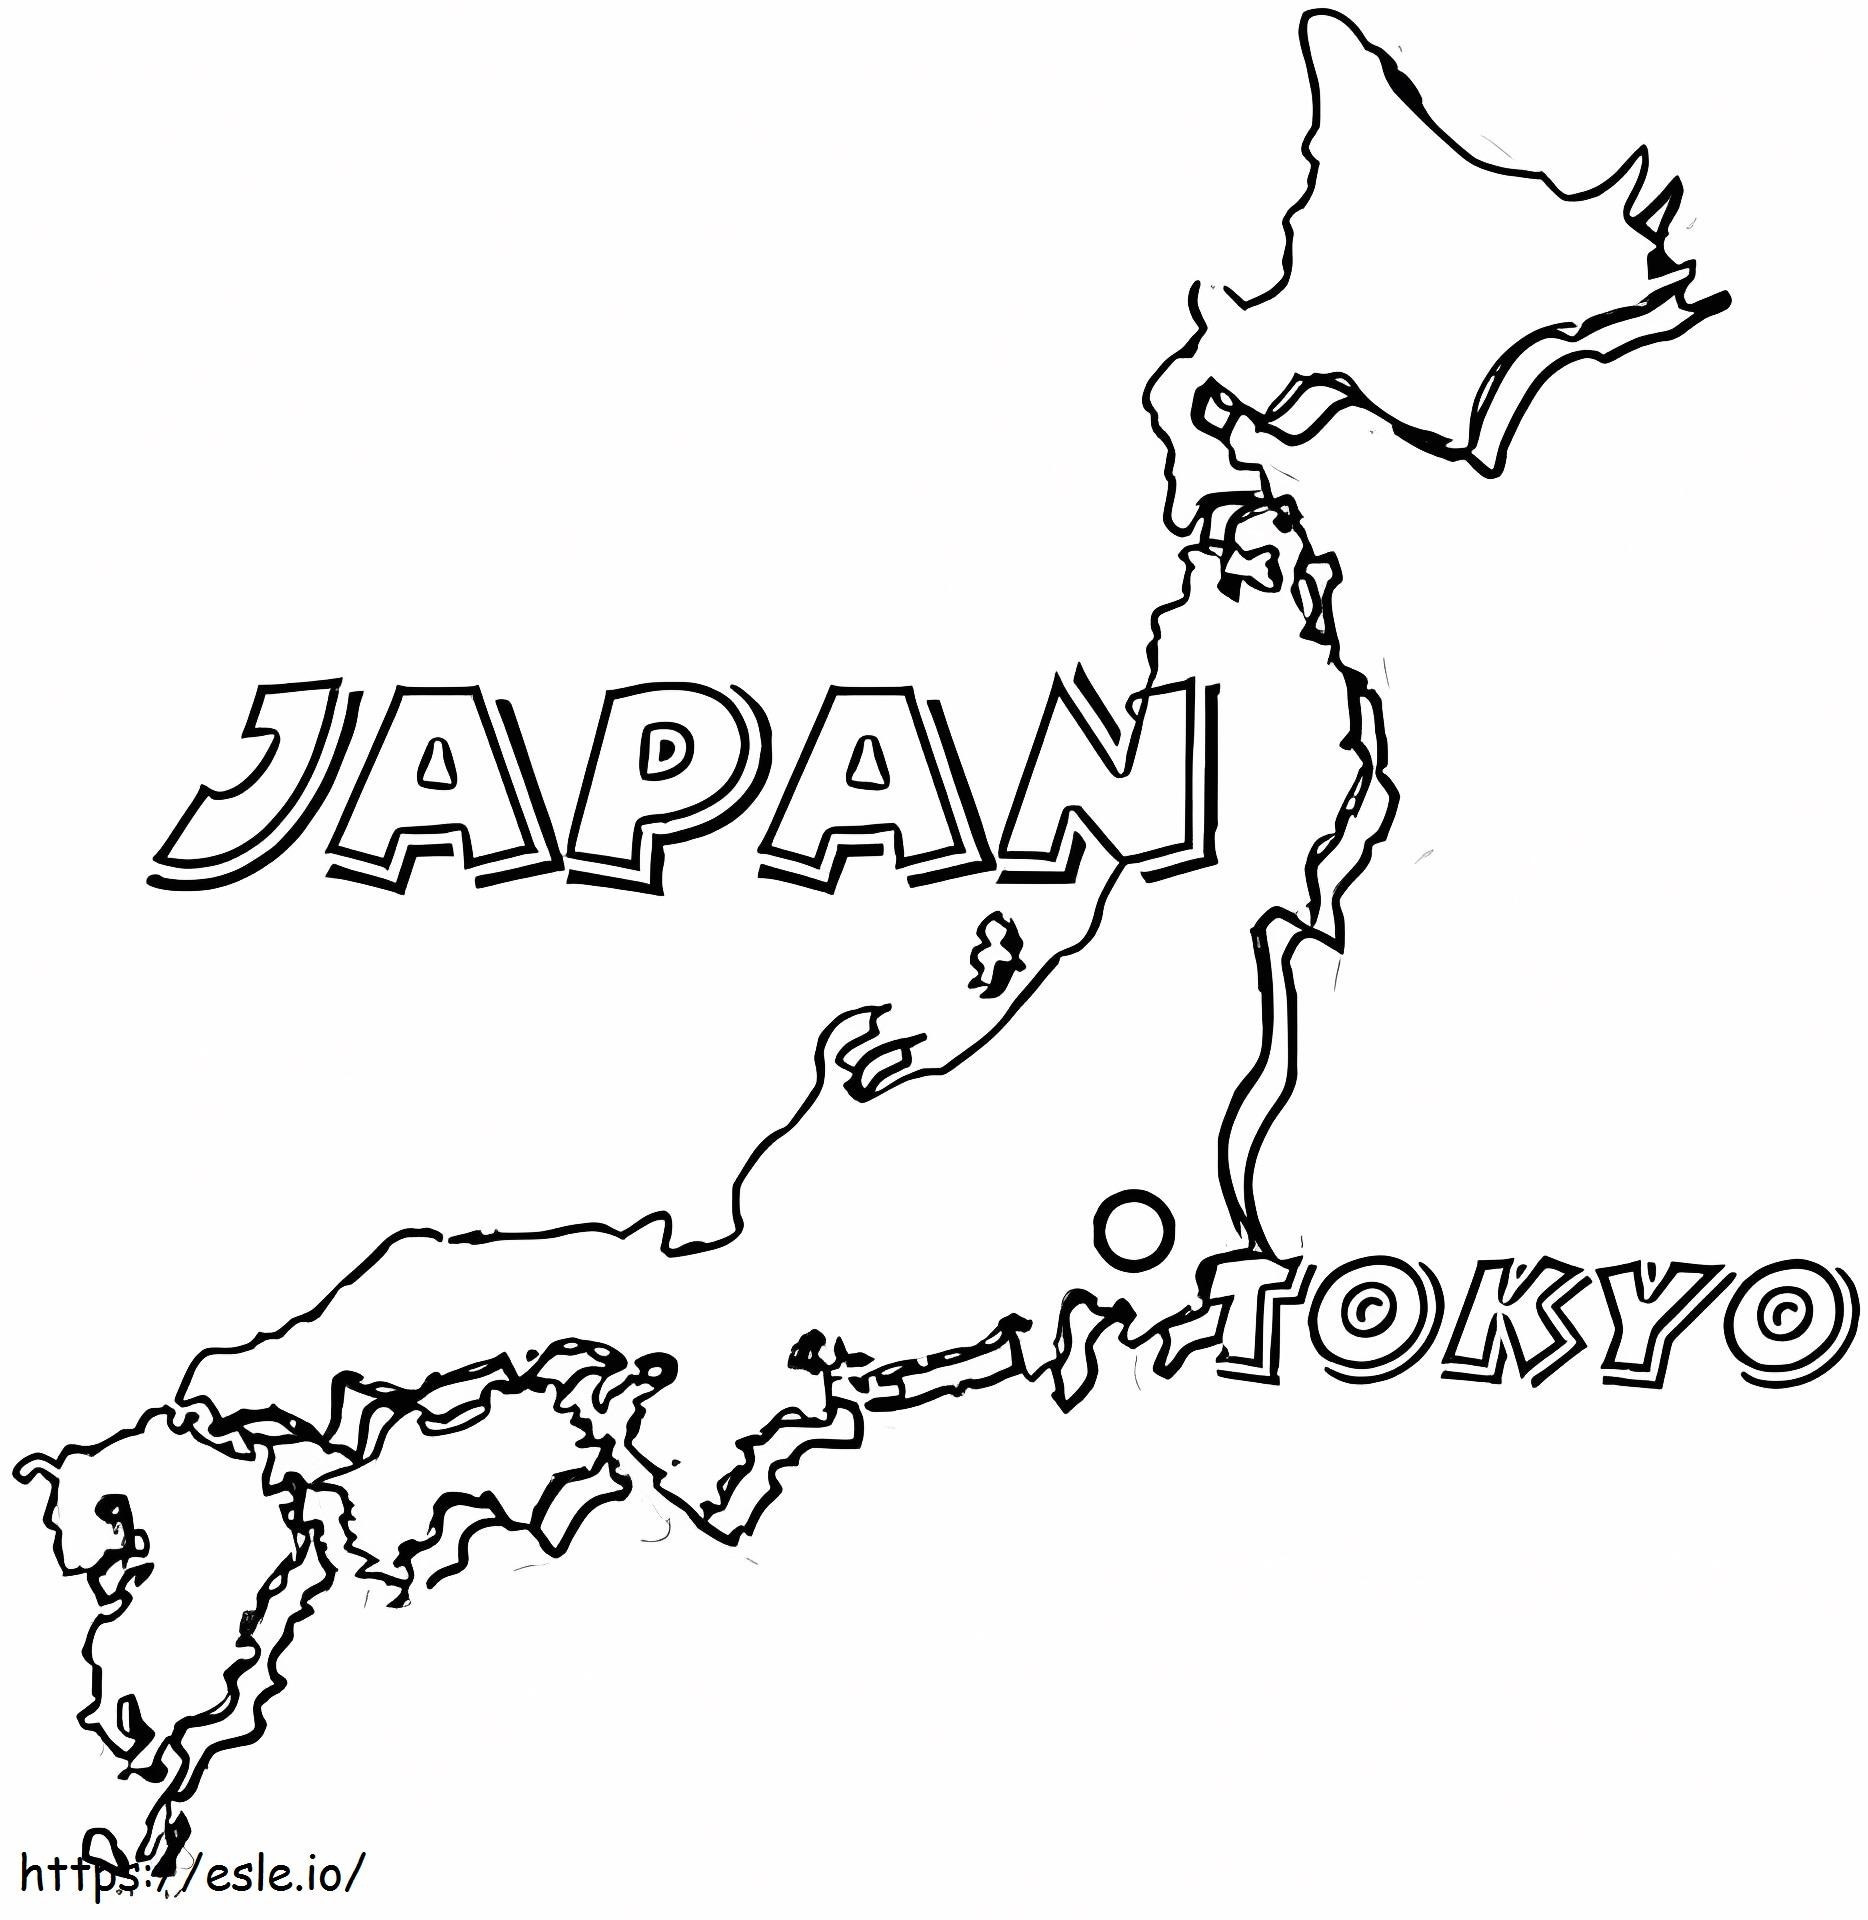 Mapa do Japão para colorir